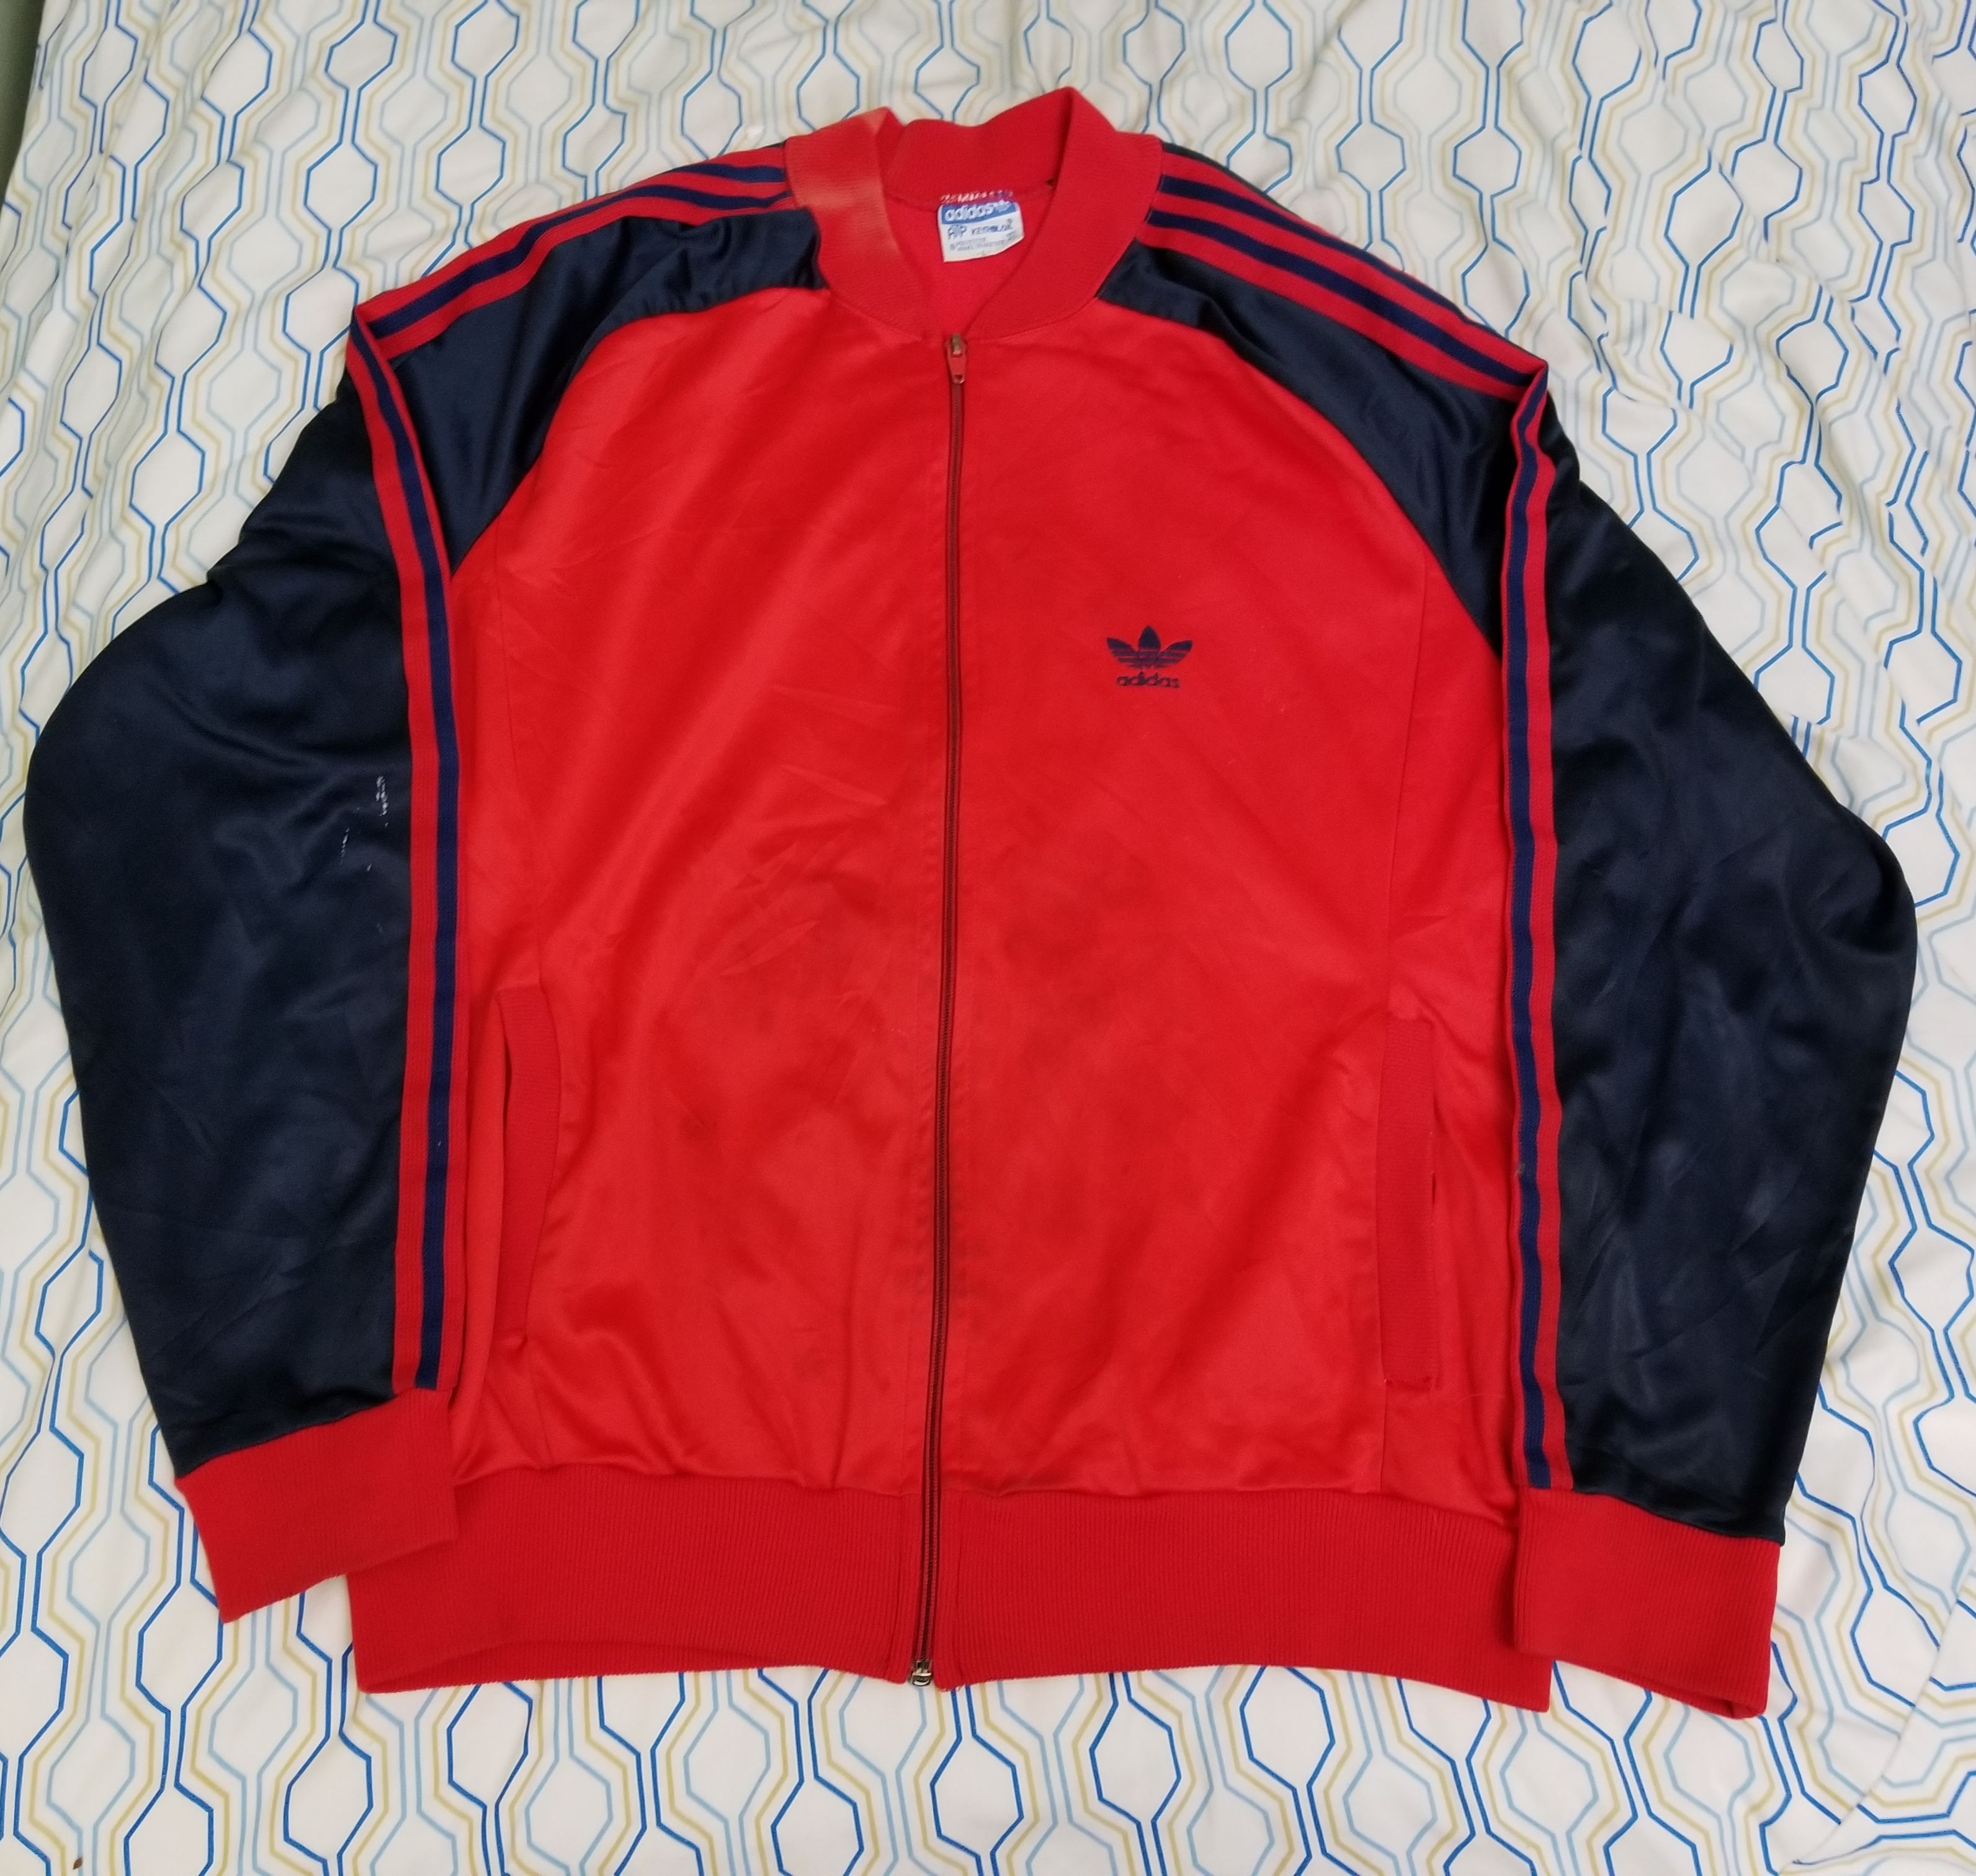 Adidas Vintage Adidas ATP Keyrolan Track Jacket Red Blue Trefoil 